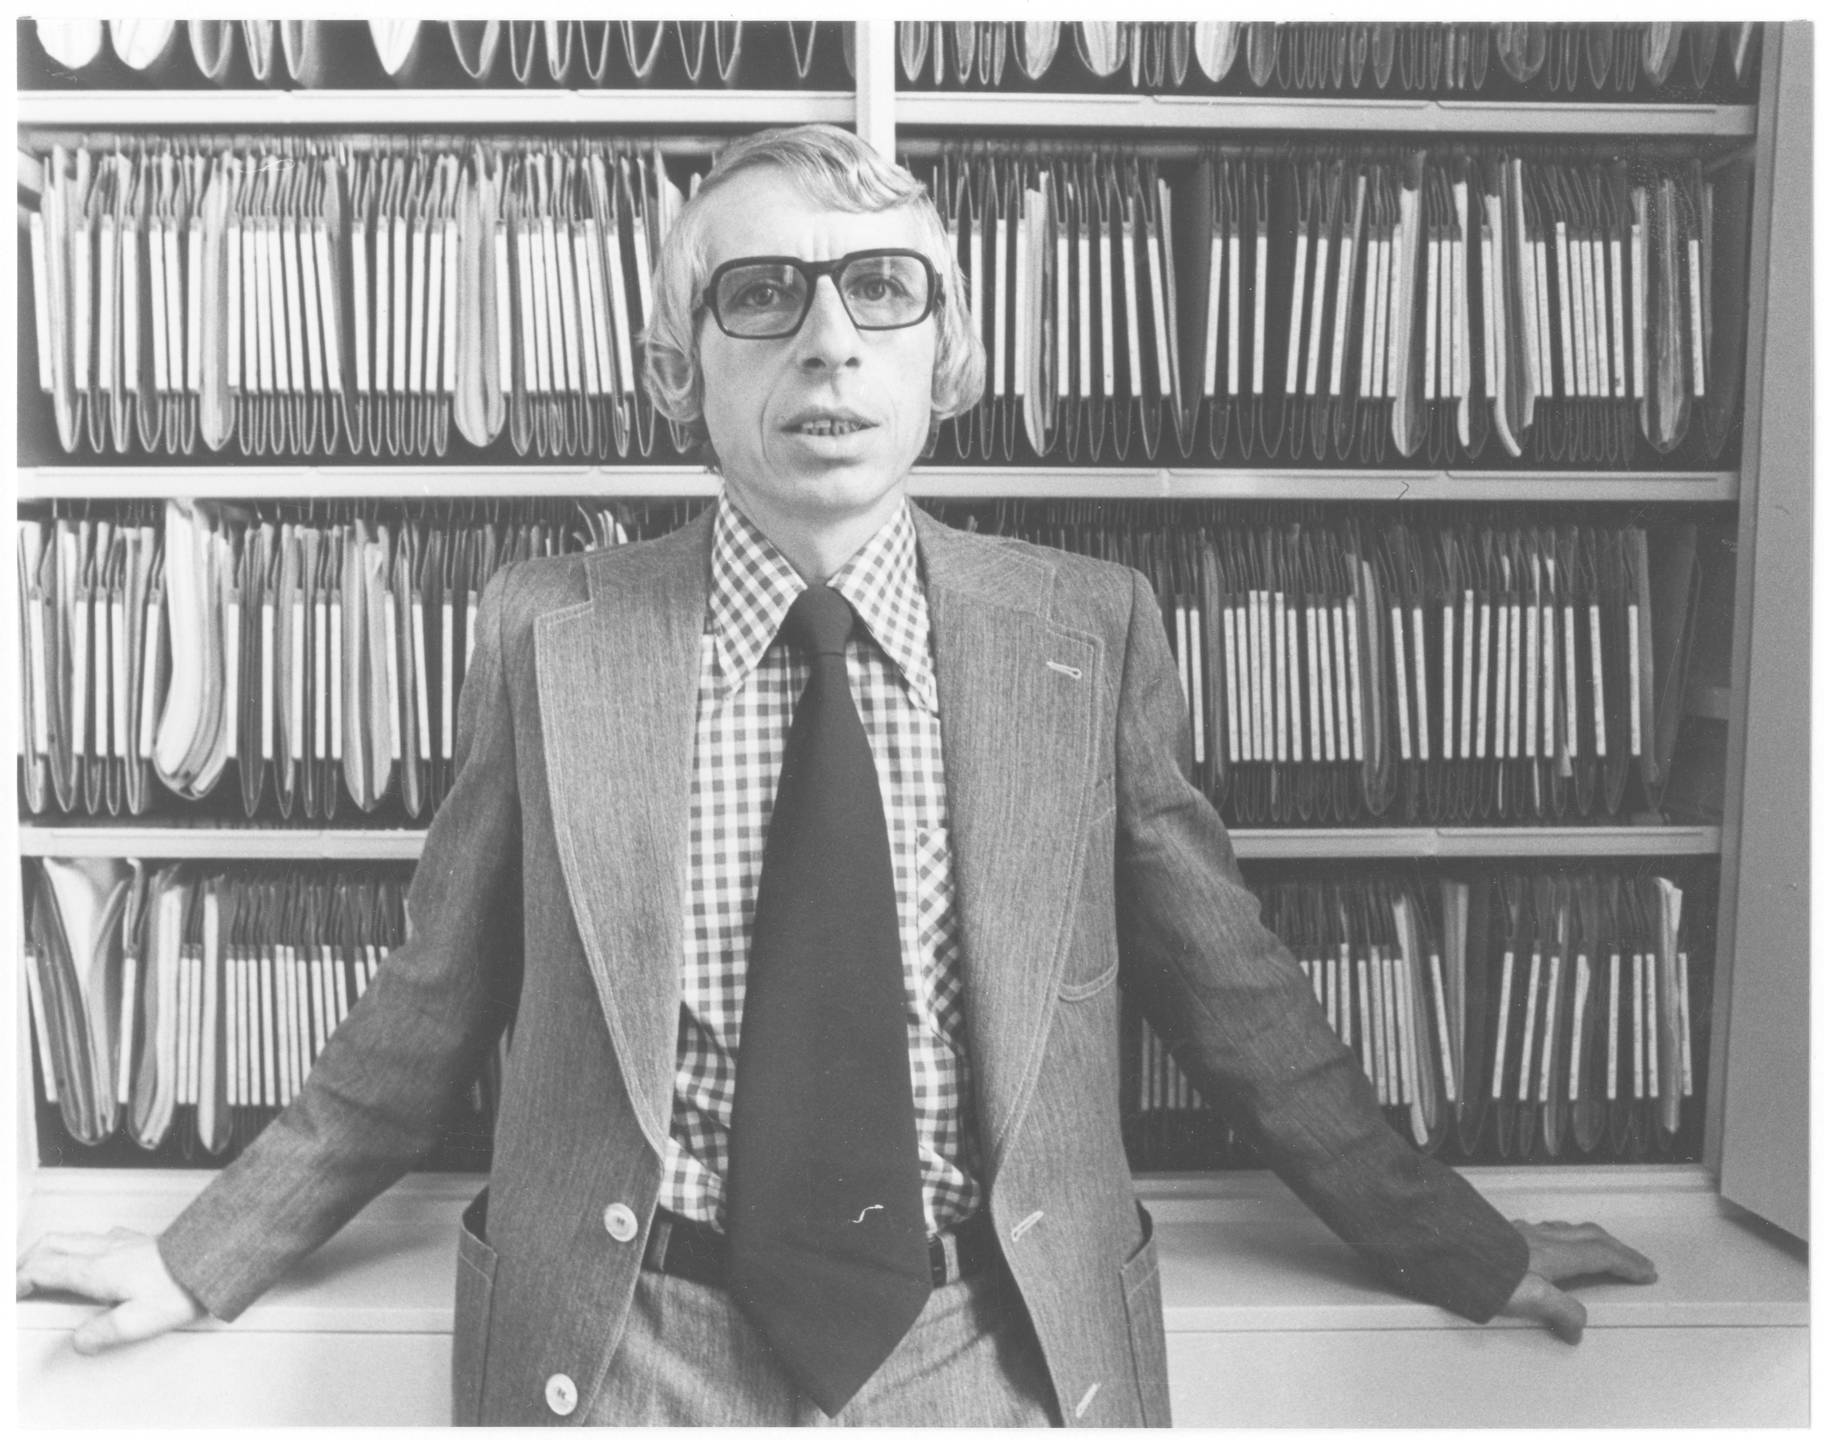 De heer Van de Brink, bureau-ambtenaar verzoekschriften Tweede Kamer. Foto Stokvis, Bureau Meyer, 1975. Foto: Haags Gemeente Archief.